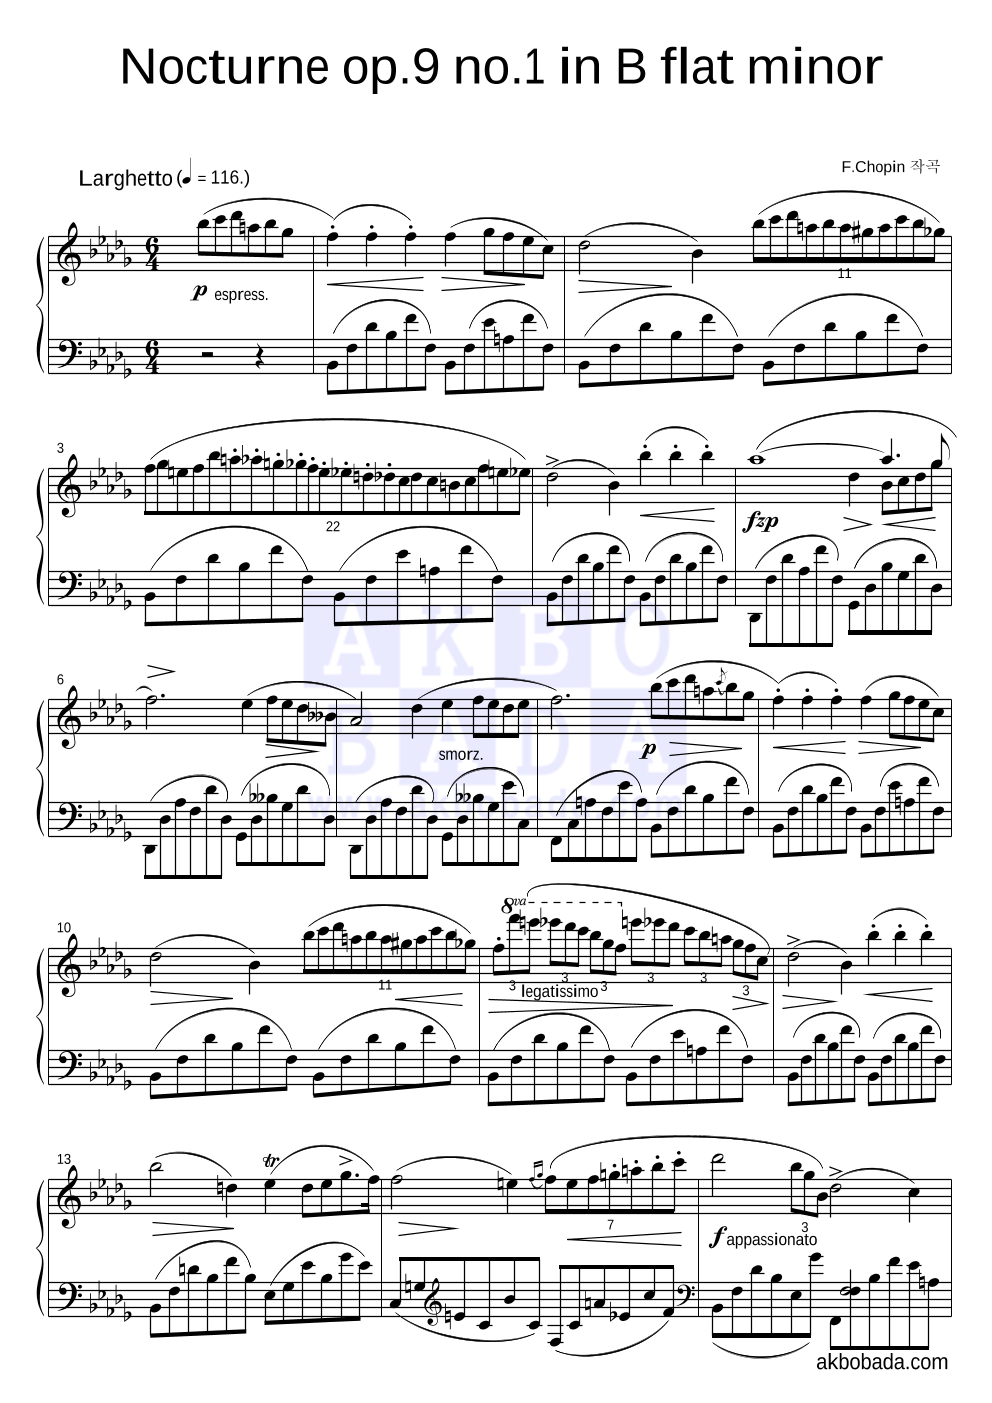 쇼팽 - Nocturne No.1 in B flat minor, Op.9 No.1 피아노 2단 악보 